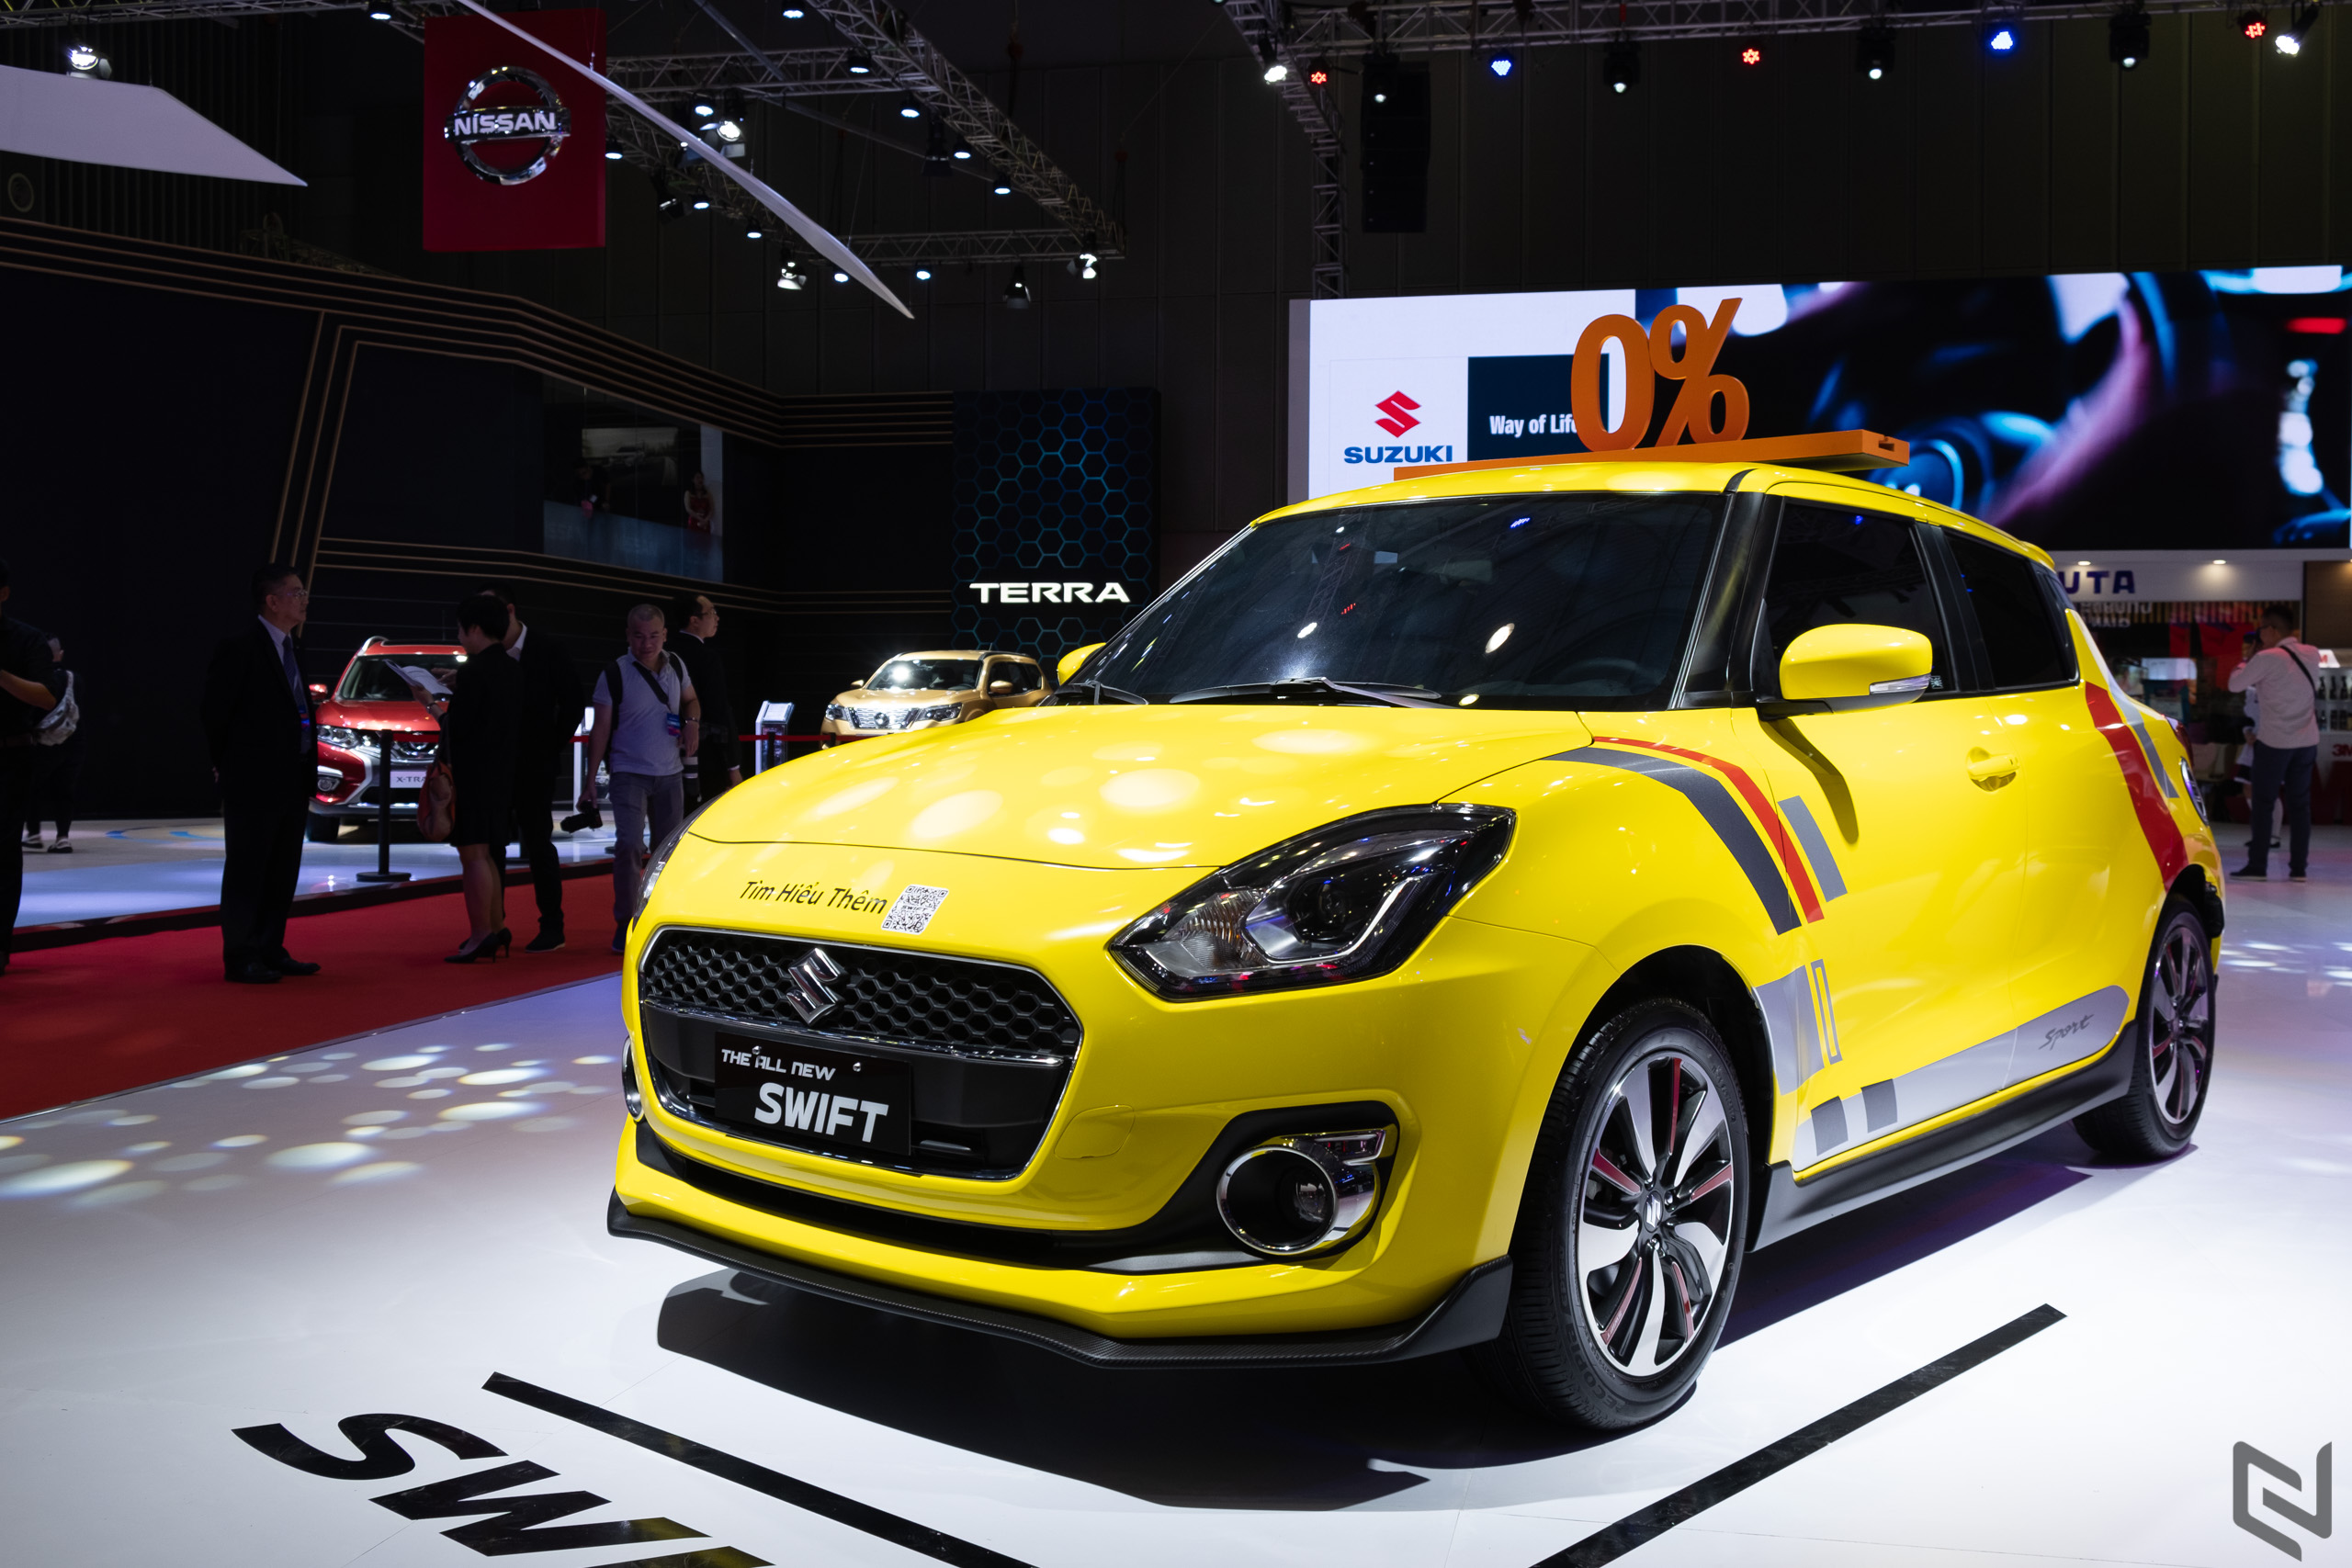 Suzuki tham dự Triển lãm Ô tô Việt Nam 2019 với 4 mẫu xe chủ lực